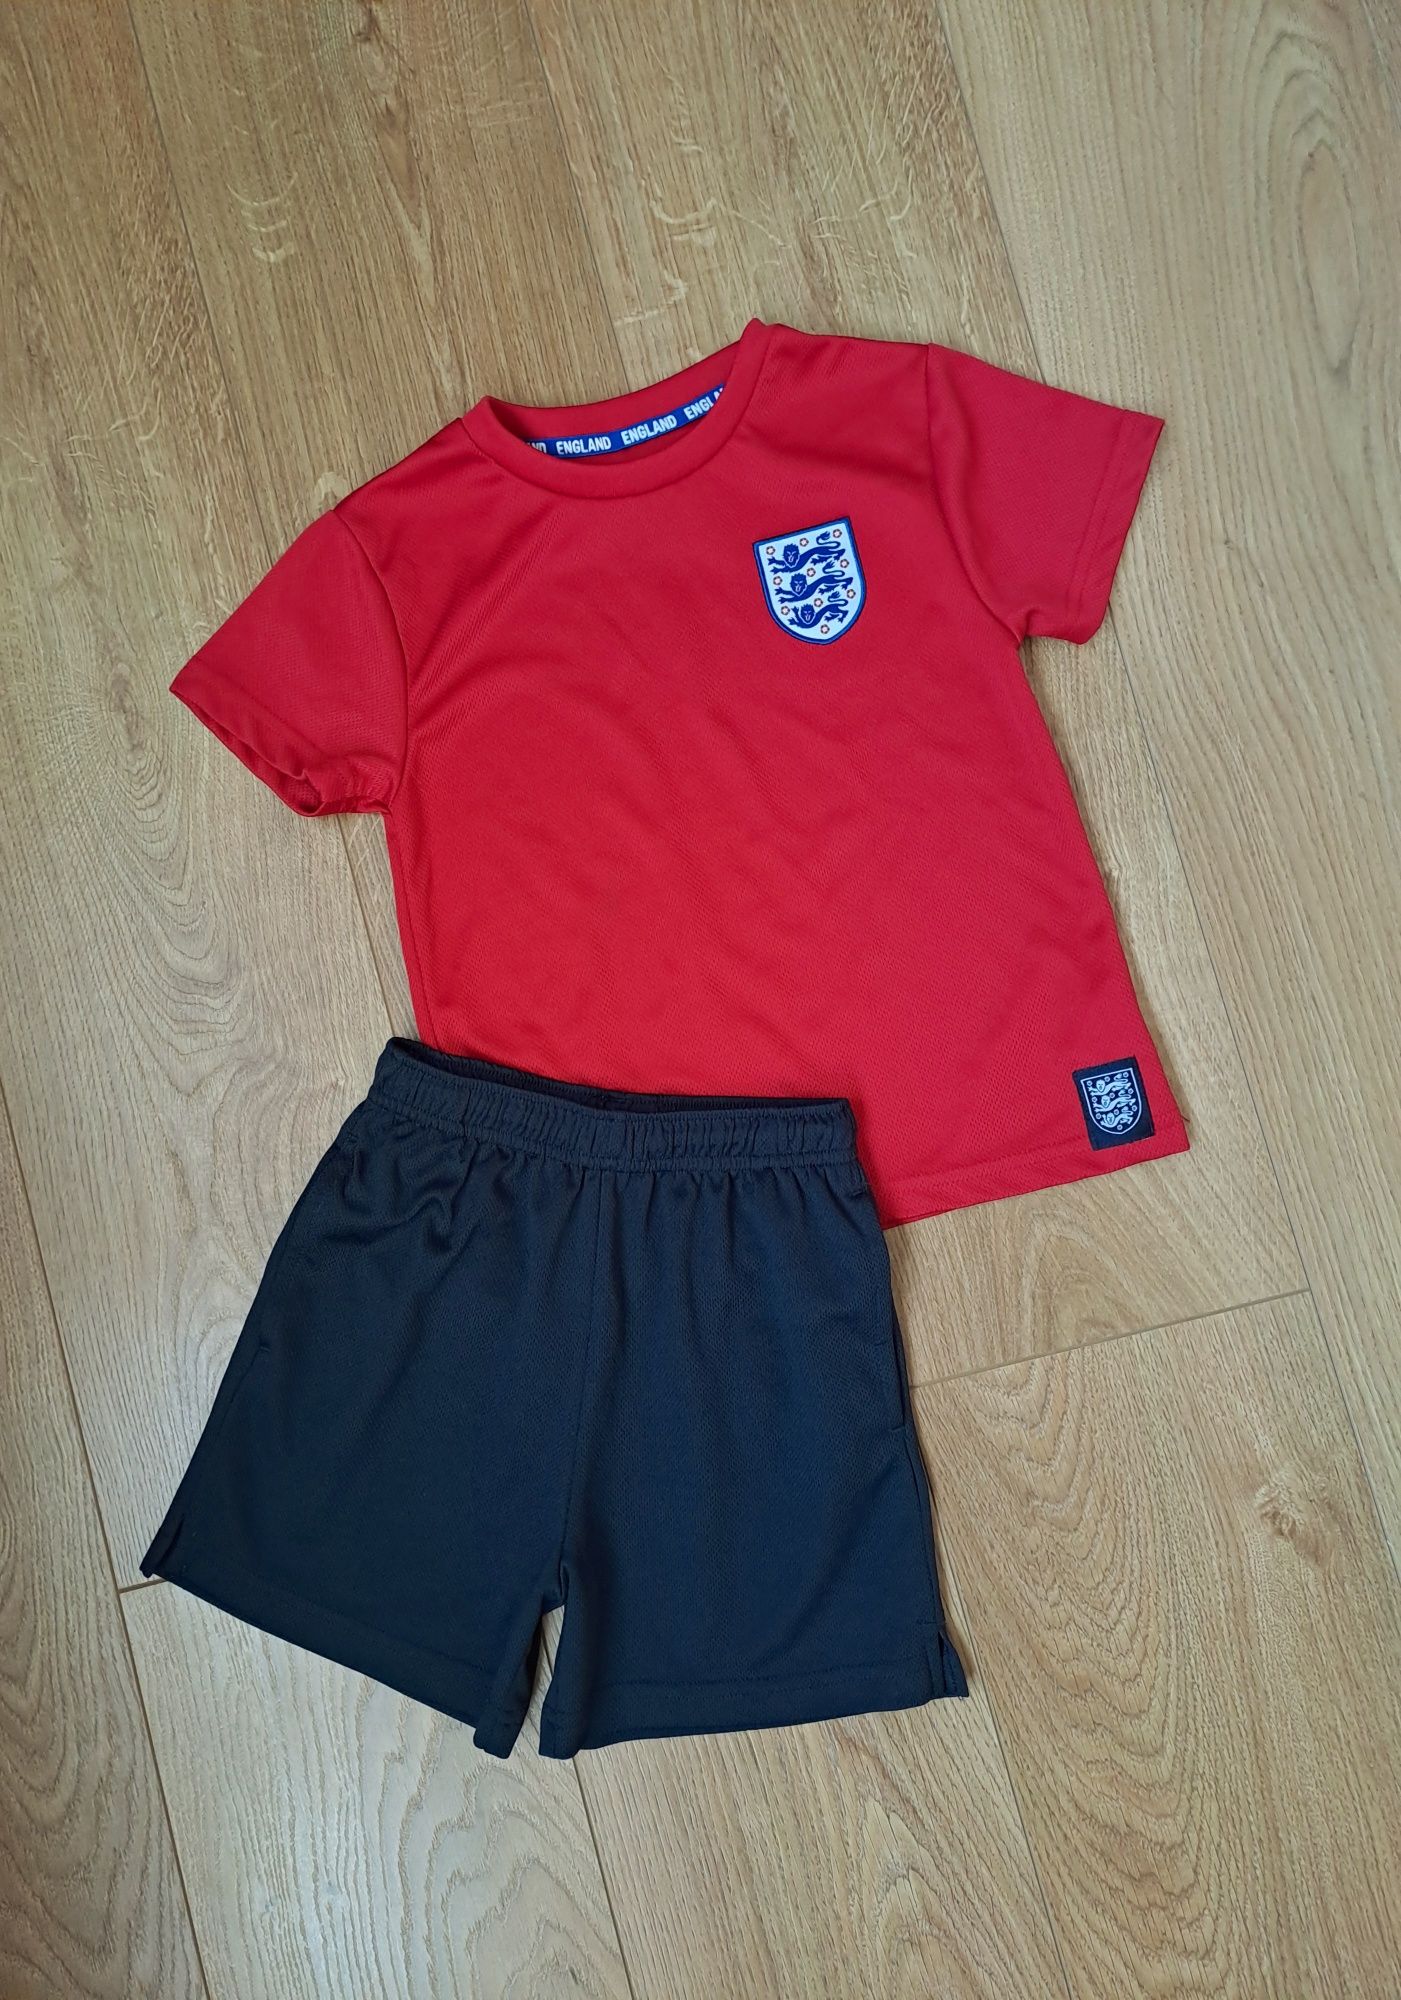 Летний набор для мальчика/футбольная спортивная форма/футболка/шорты